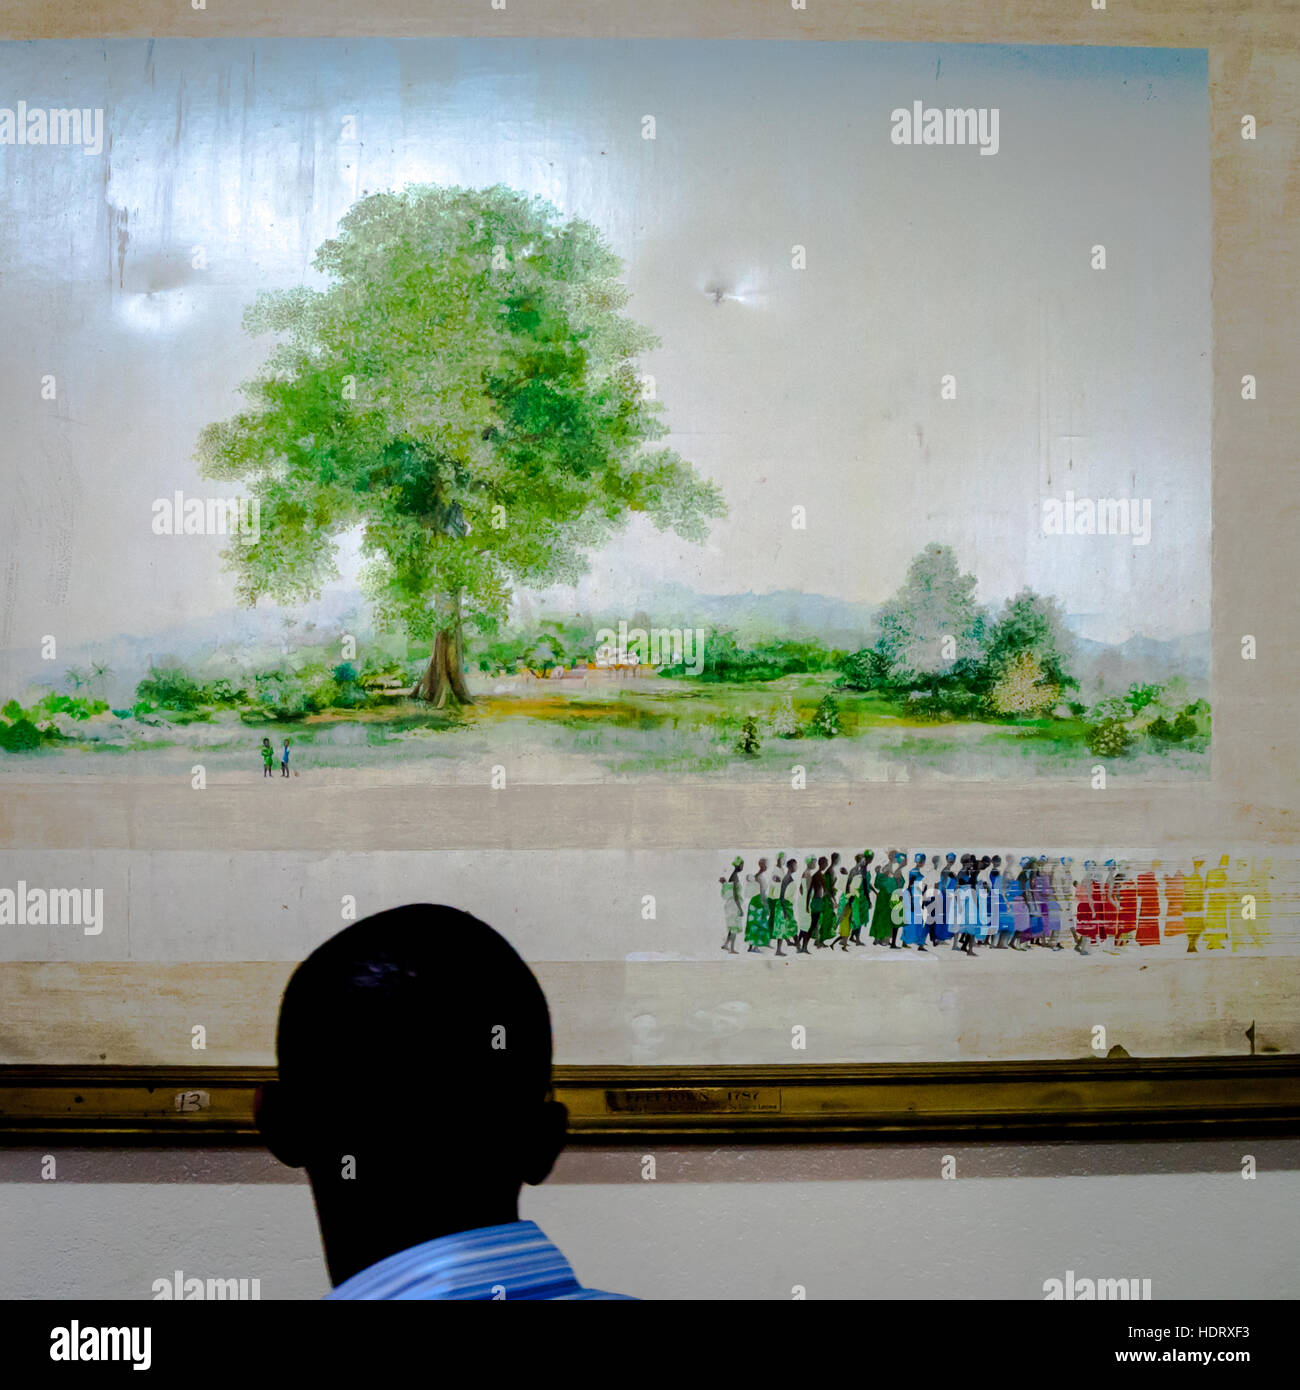 L'arbre de coton symbolise la libération de l'esclavage. Le cotonnier géant se trouve toujours dans le centre de Freetown. La peinture historique est exposée au Musée national voisin de la Sierra Leone. Arbre de coton. Peinture (Don de la France au Musée national de Freetown), Freetown, Sierra Leone Banque D'Images